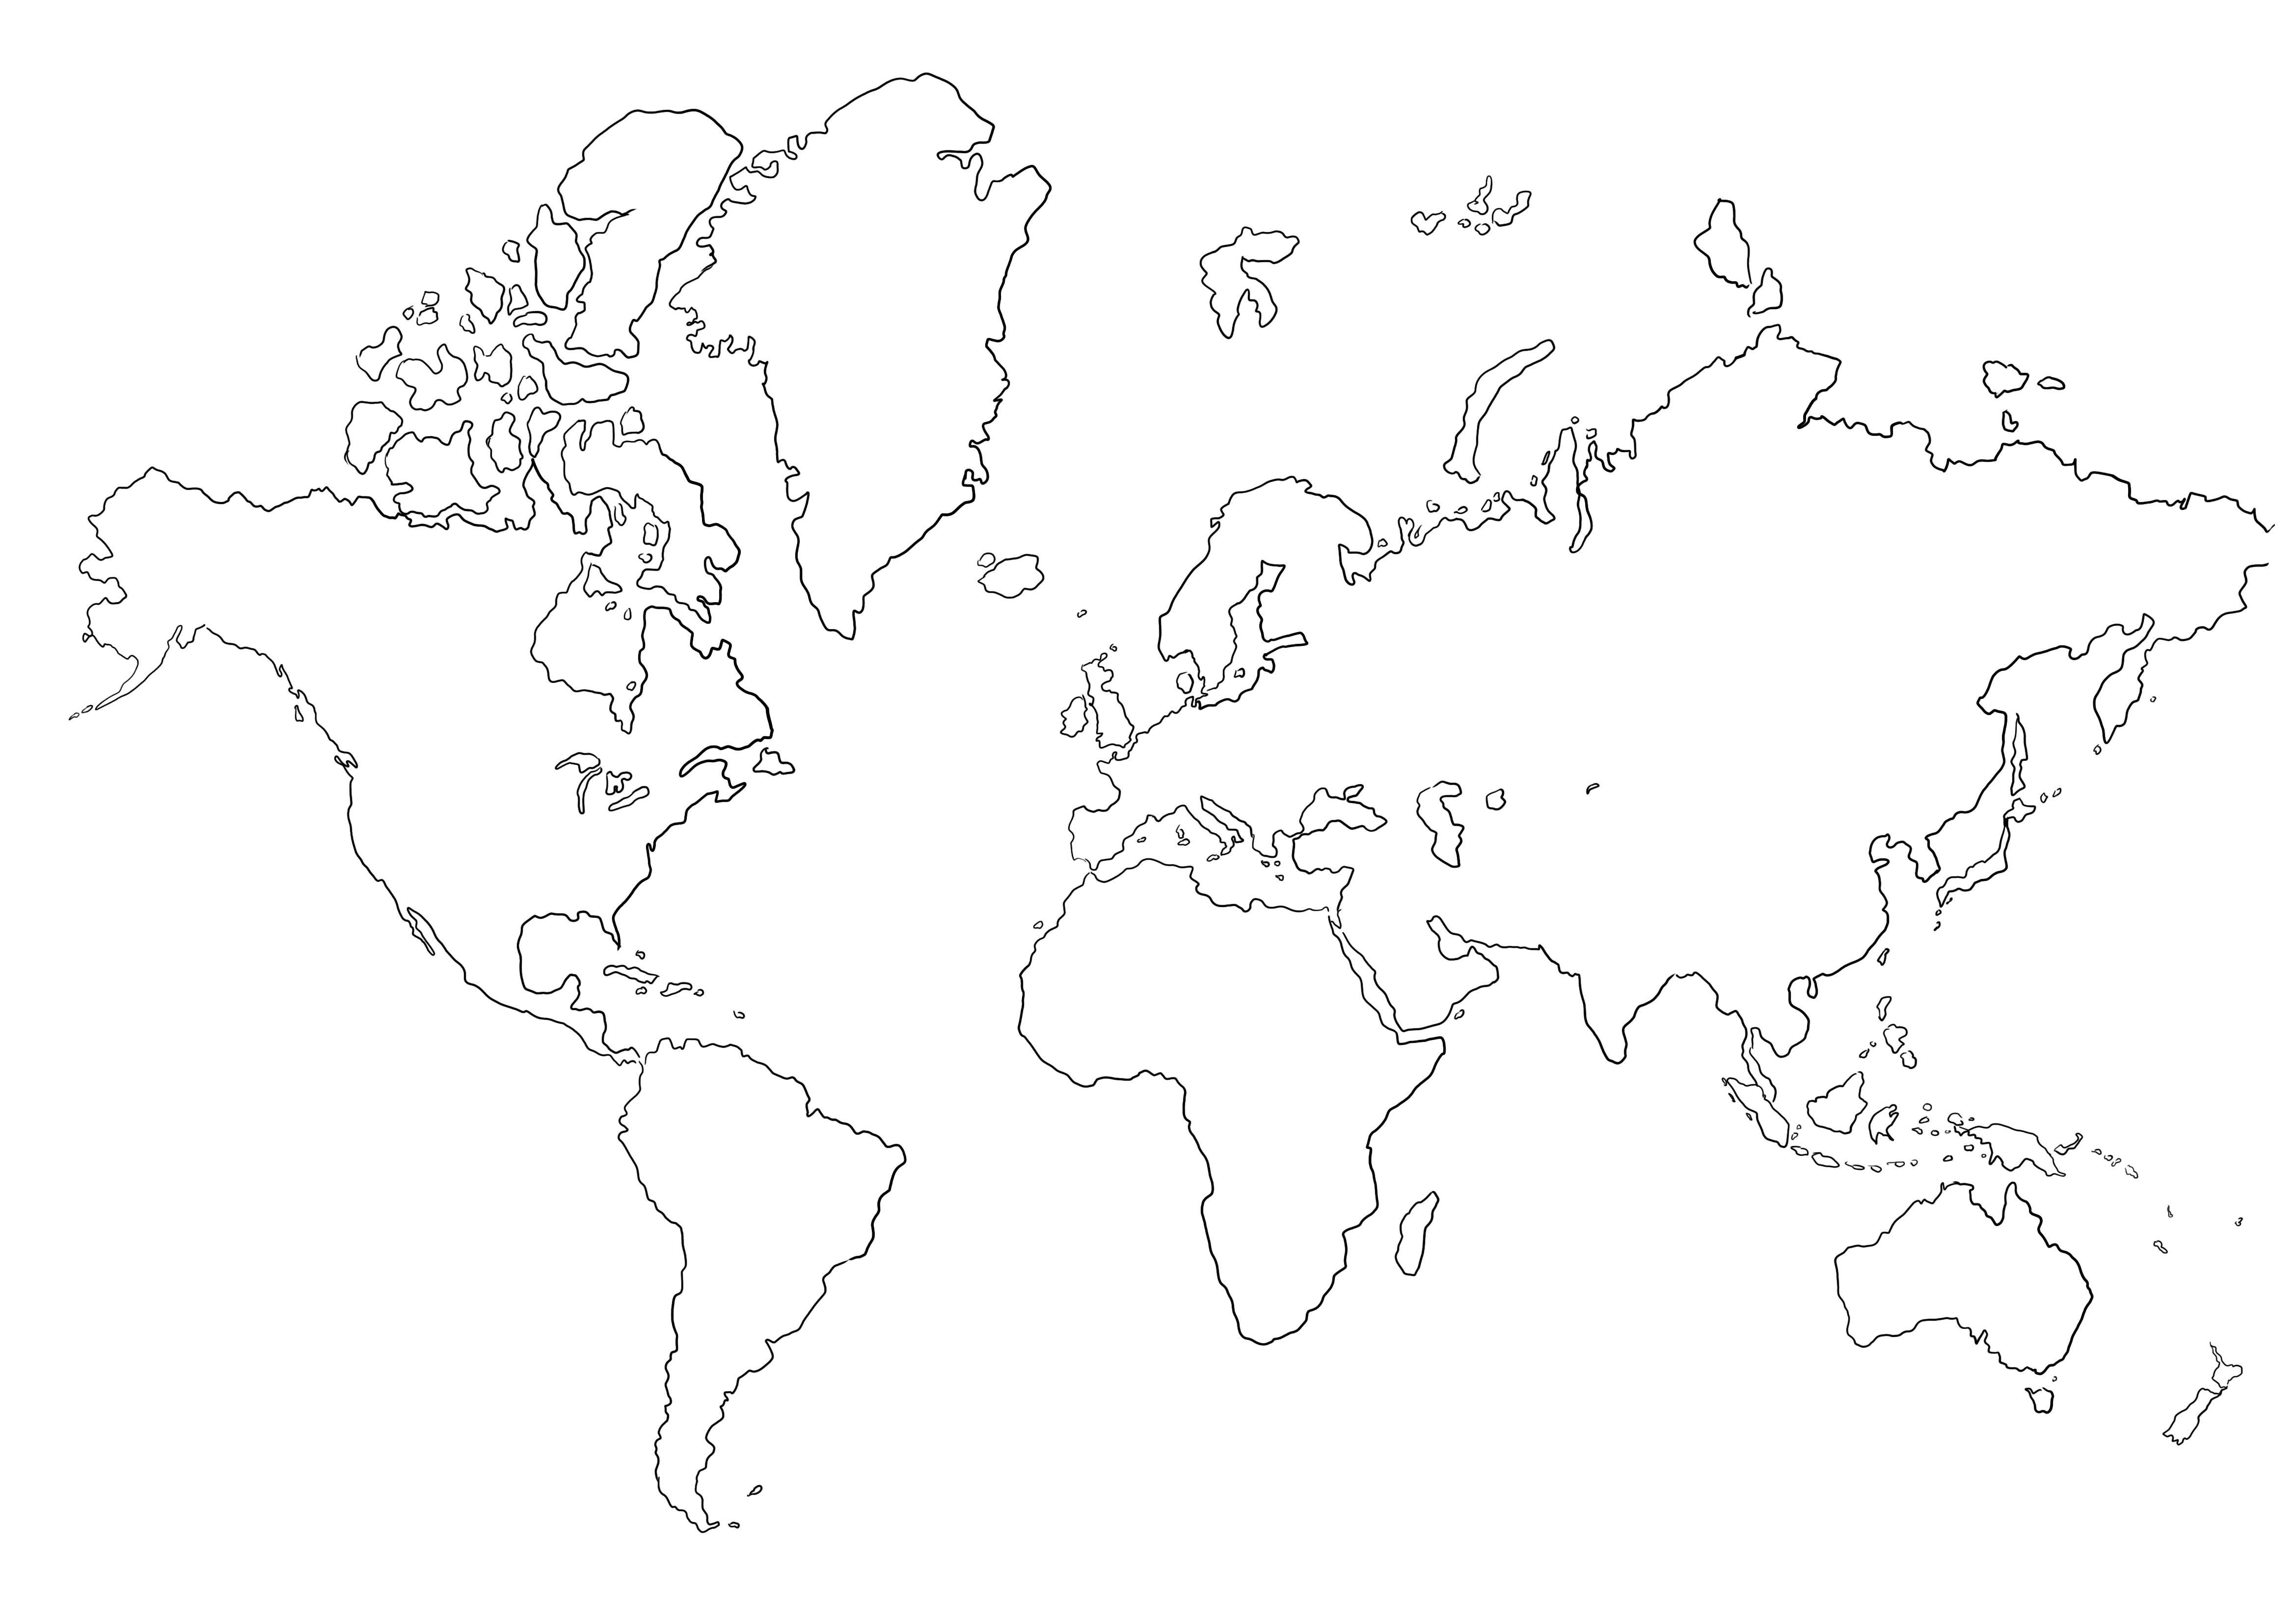 Üres világtérkép kép nélkül színezve kinyomtatható vagy elmenthető későbbre